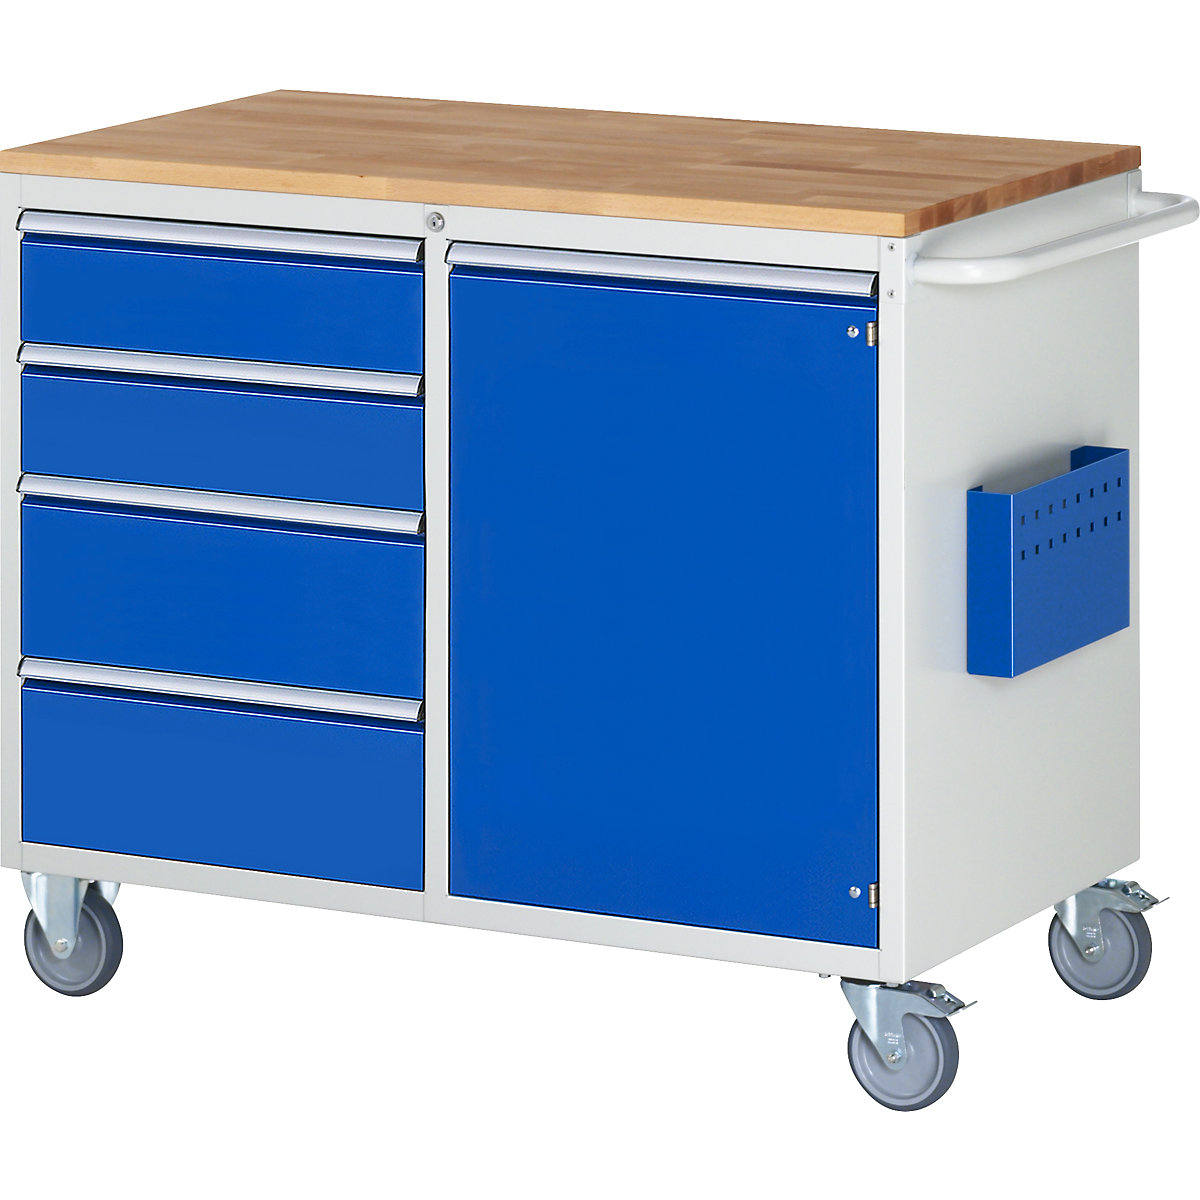 Établis compacts mobiles – RAU, 4 tiroirs, 1 porte, plateau en bois, gris clair / bleu gentiane-2